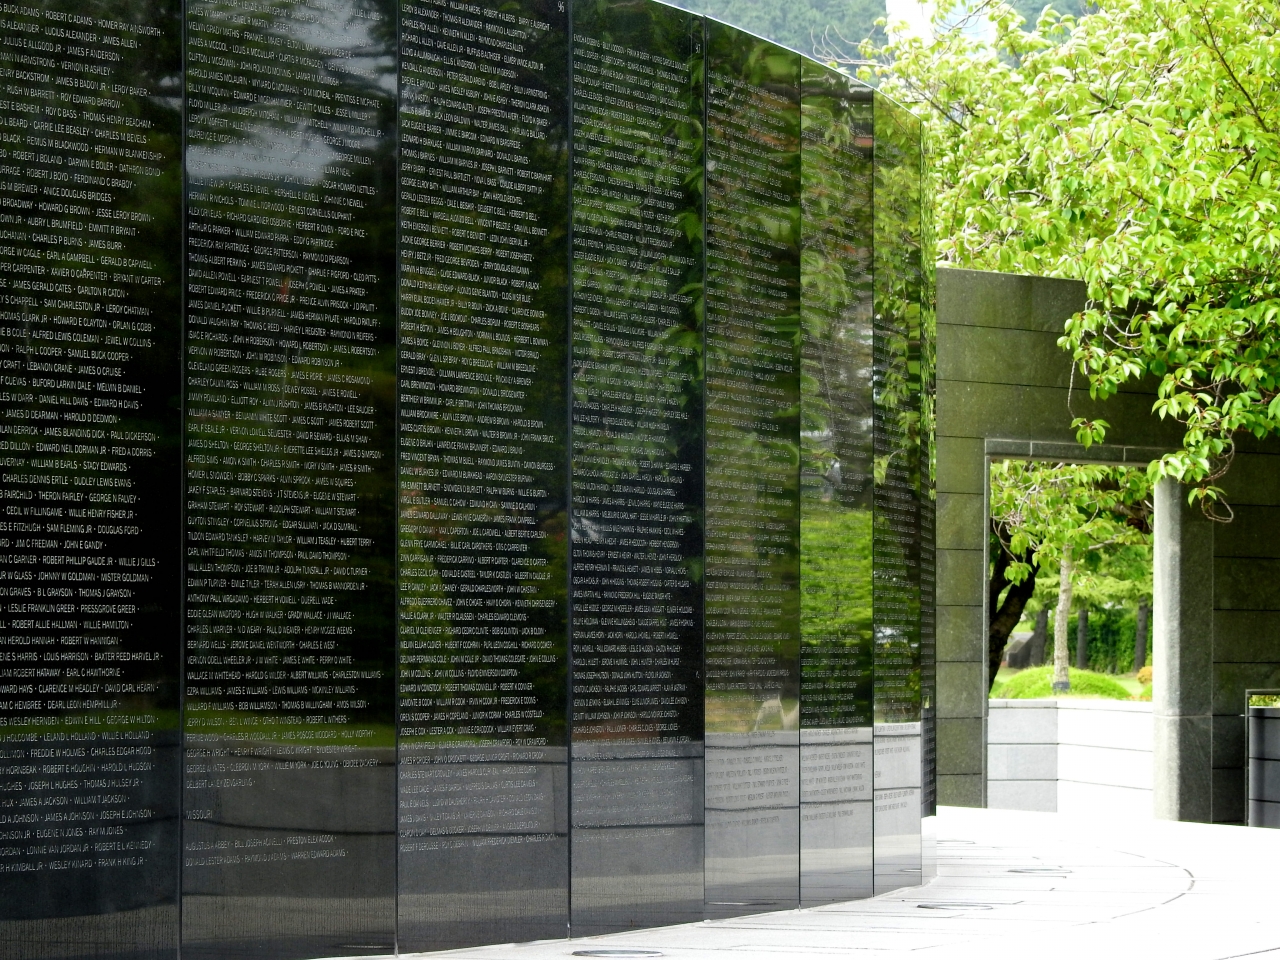 검은 벽에 모든 전사자의 이름을 새긴 추모 명비. 유엔기념공원 중앙에 자리하고 있다.